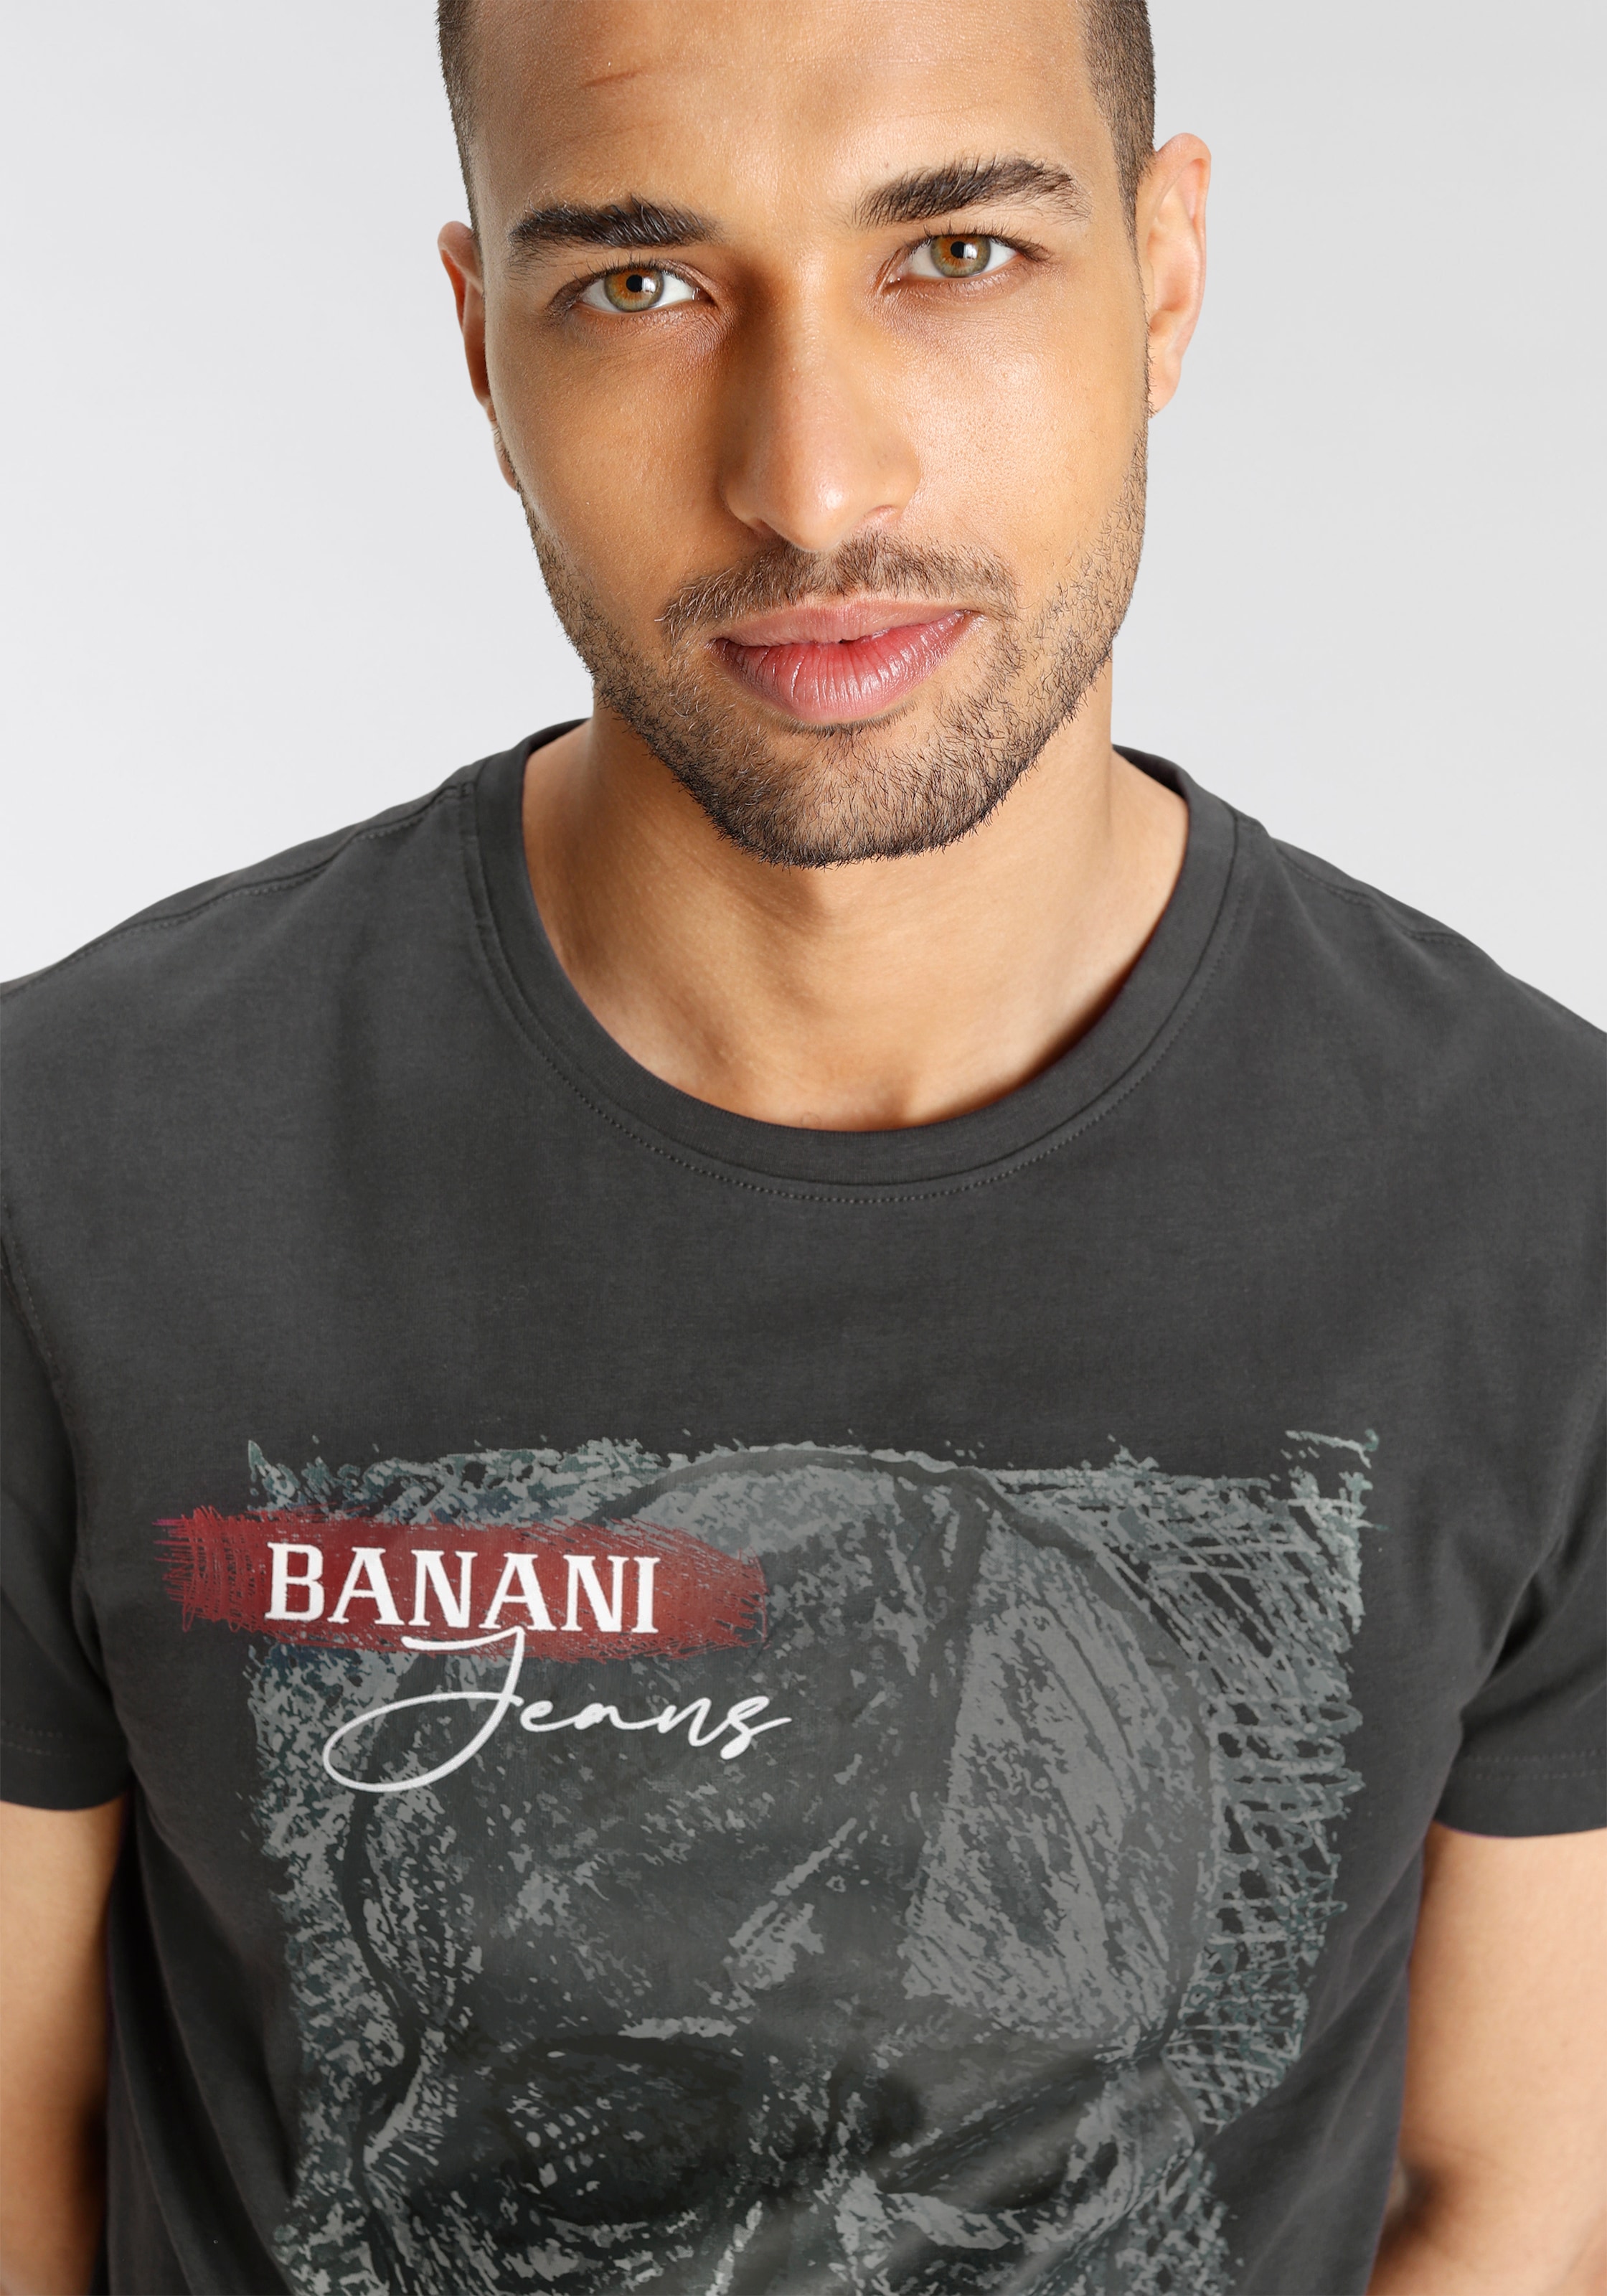 ♕ Banani großem Frontprint T-Shirt, bei mit Bruno